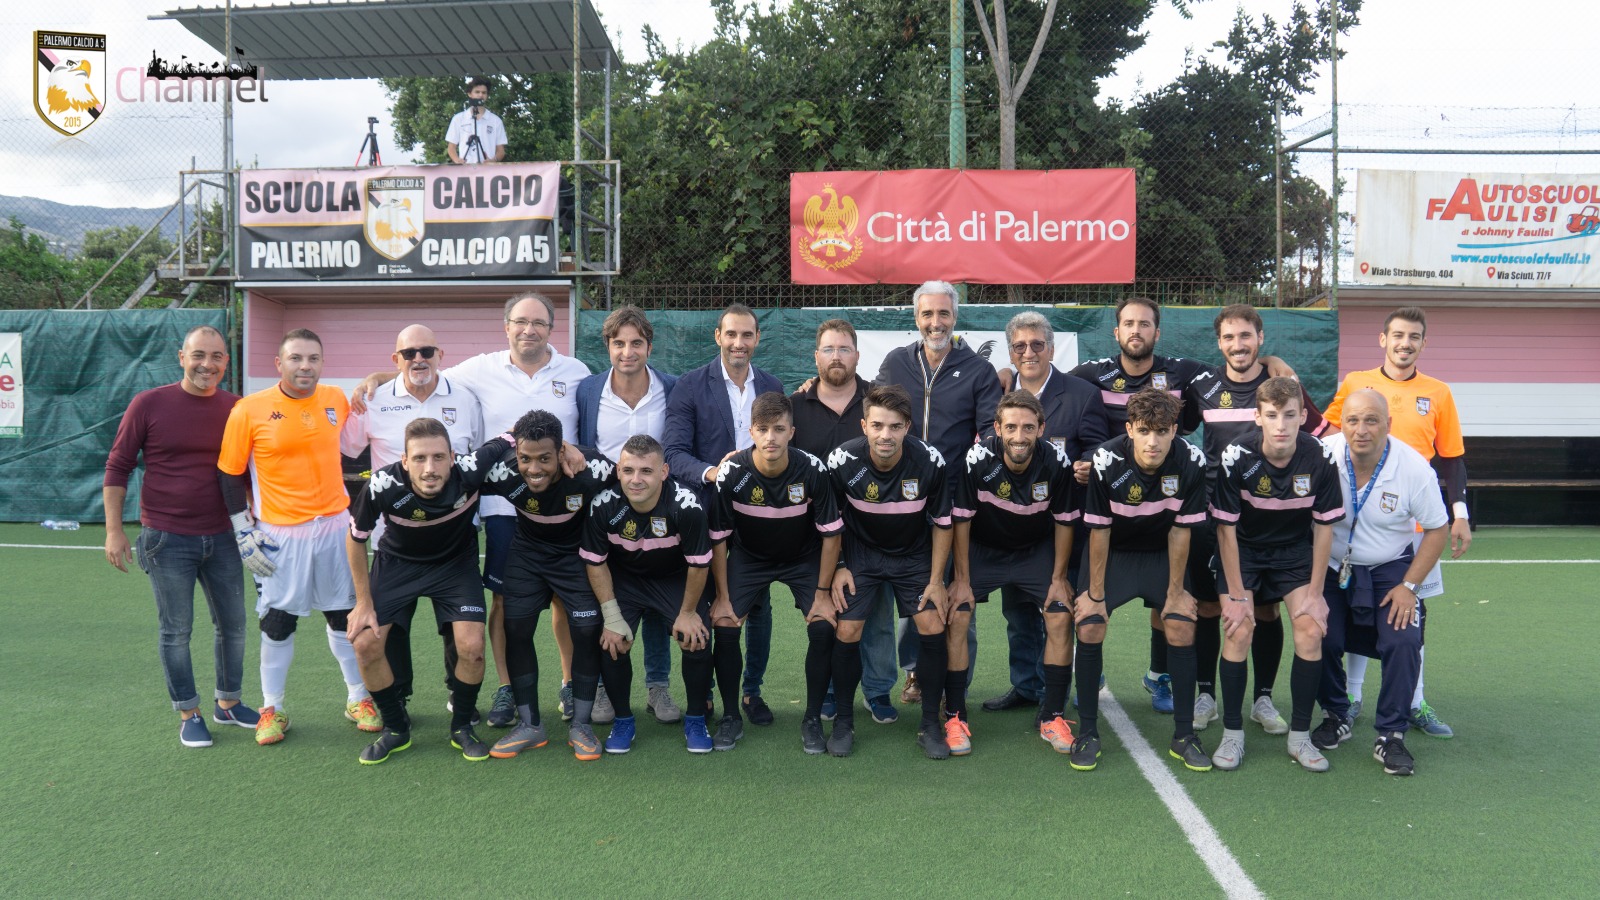 La famiglia di Palermo al Vertice si allarga: l’ASD Palermo Calcio a 5 entra a far parte del Consorzio